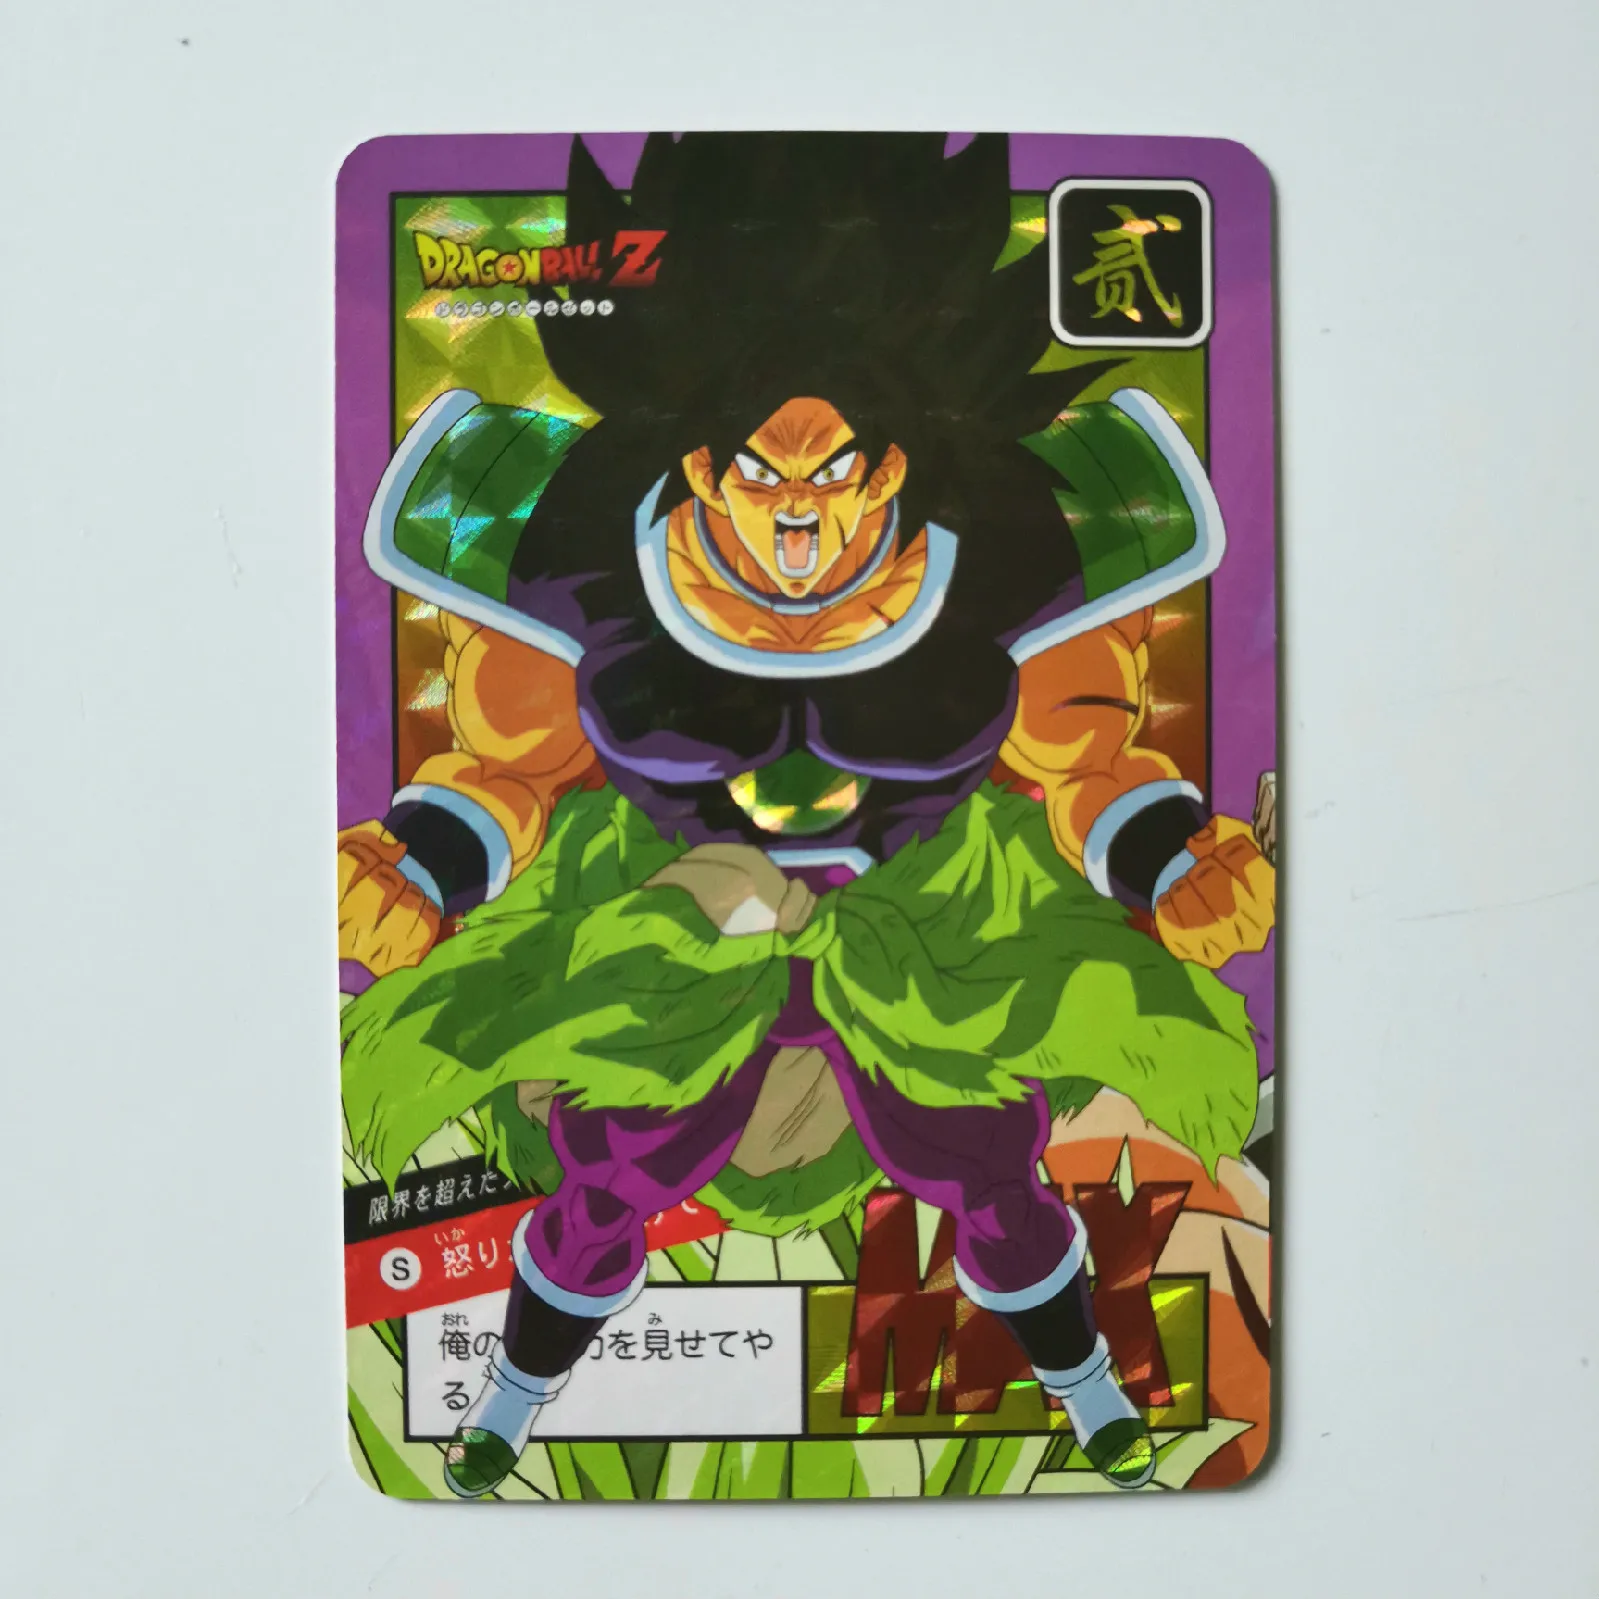 9 шт./компл. супер Dragon Ball-Z Broli Heroes Боевая карта Ultra Instinct Goku Vegeta игровая коллекция карт